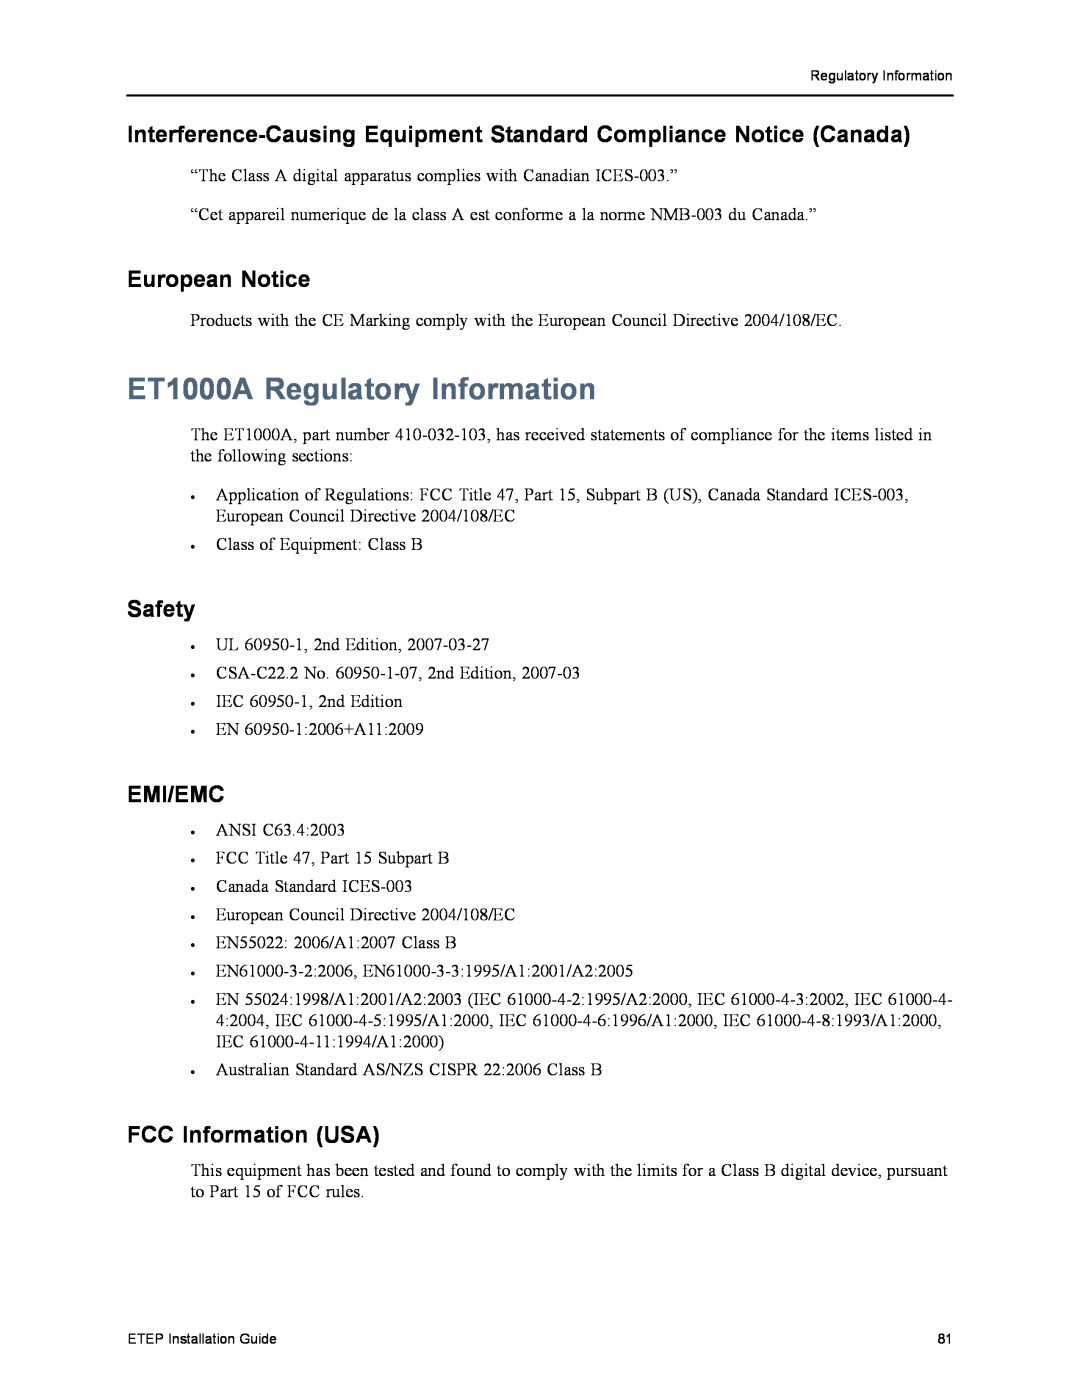 Black Box ET0010A, ET0100A, ET10000A Emi/Emc, ET1000A Regulatory Information, European Notice, Safety, FCC Information USA 